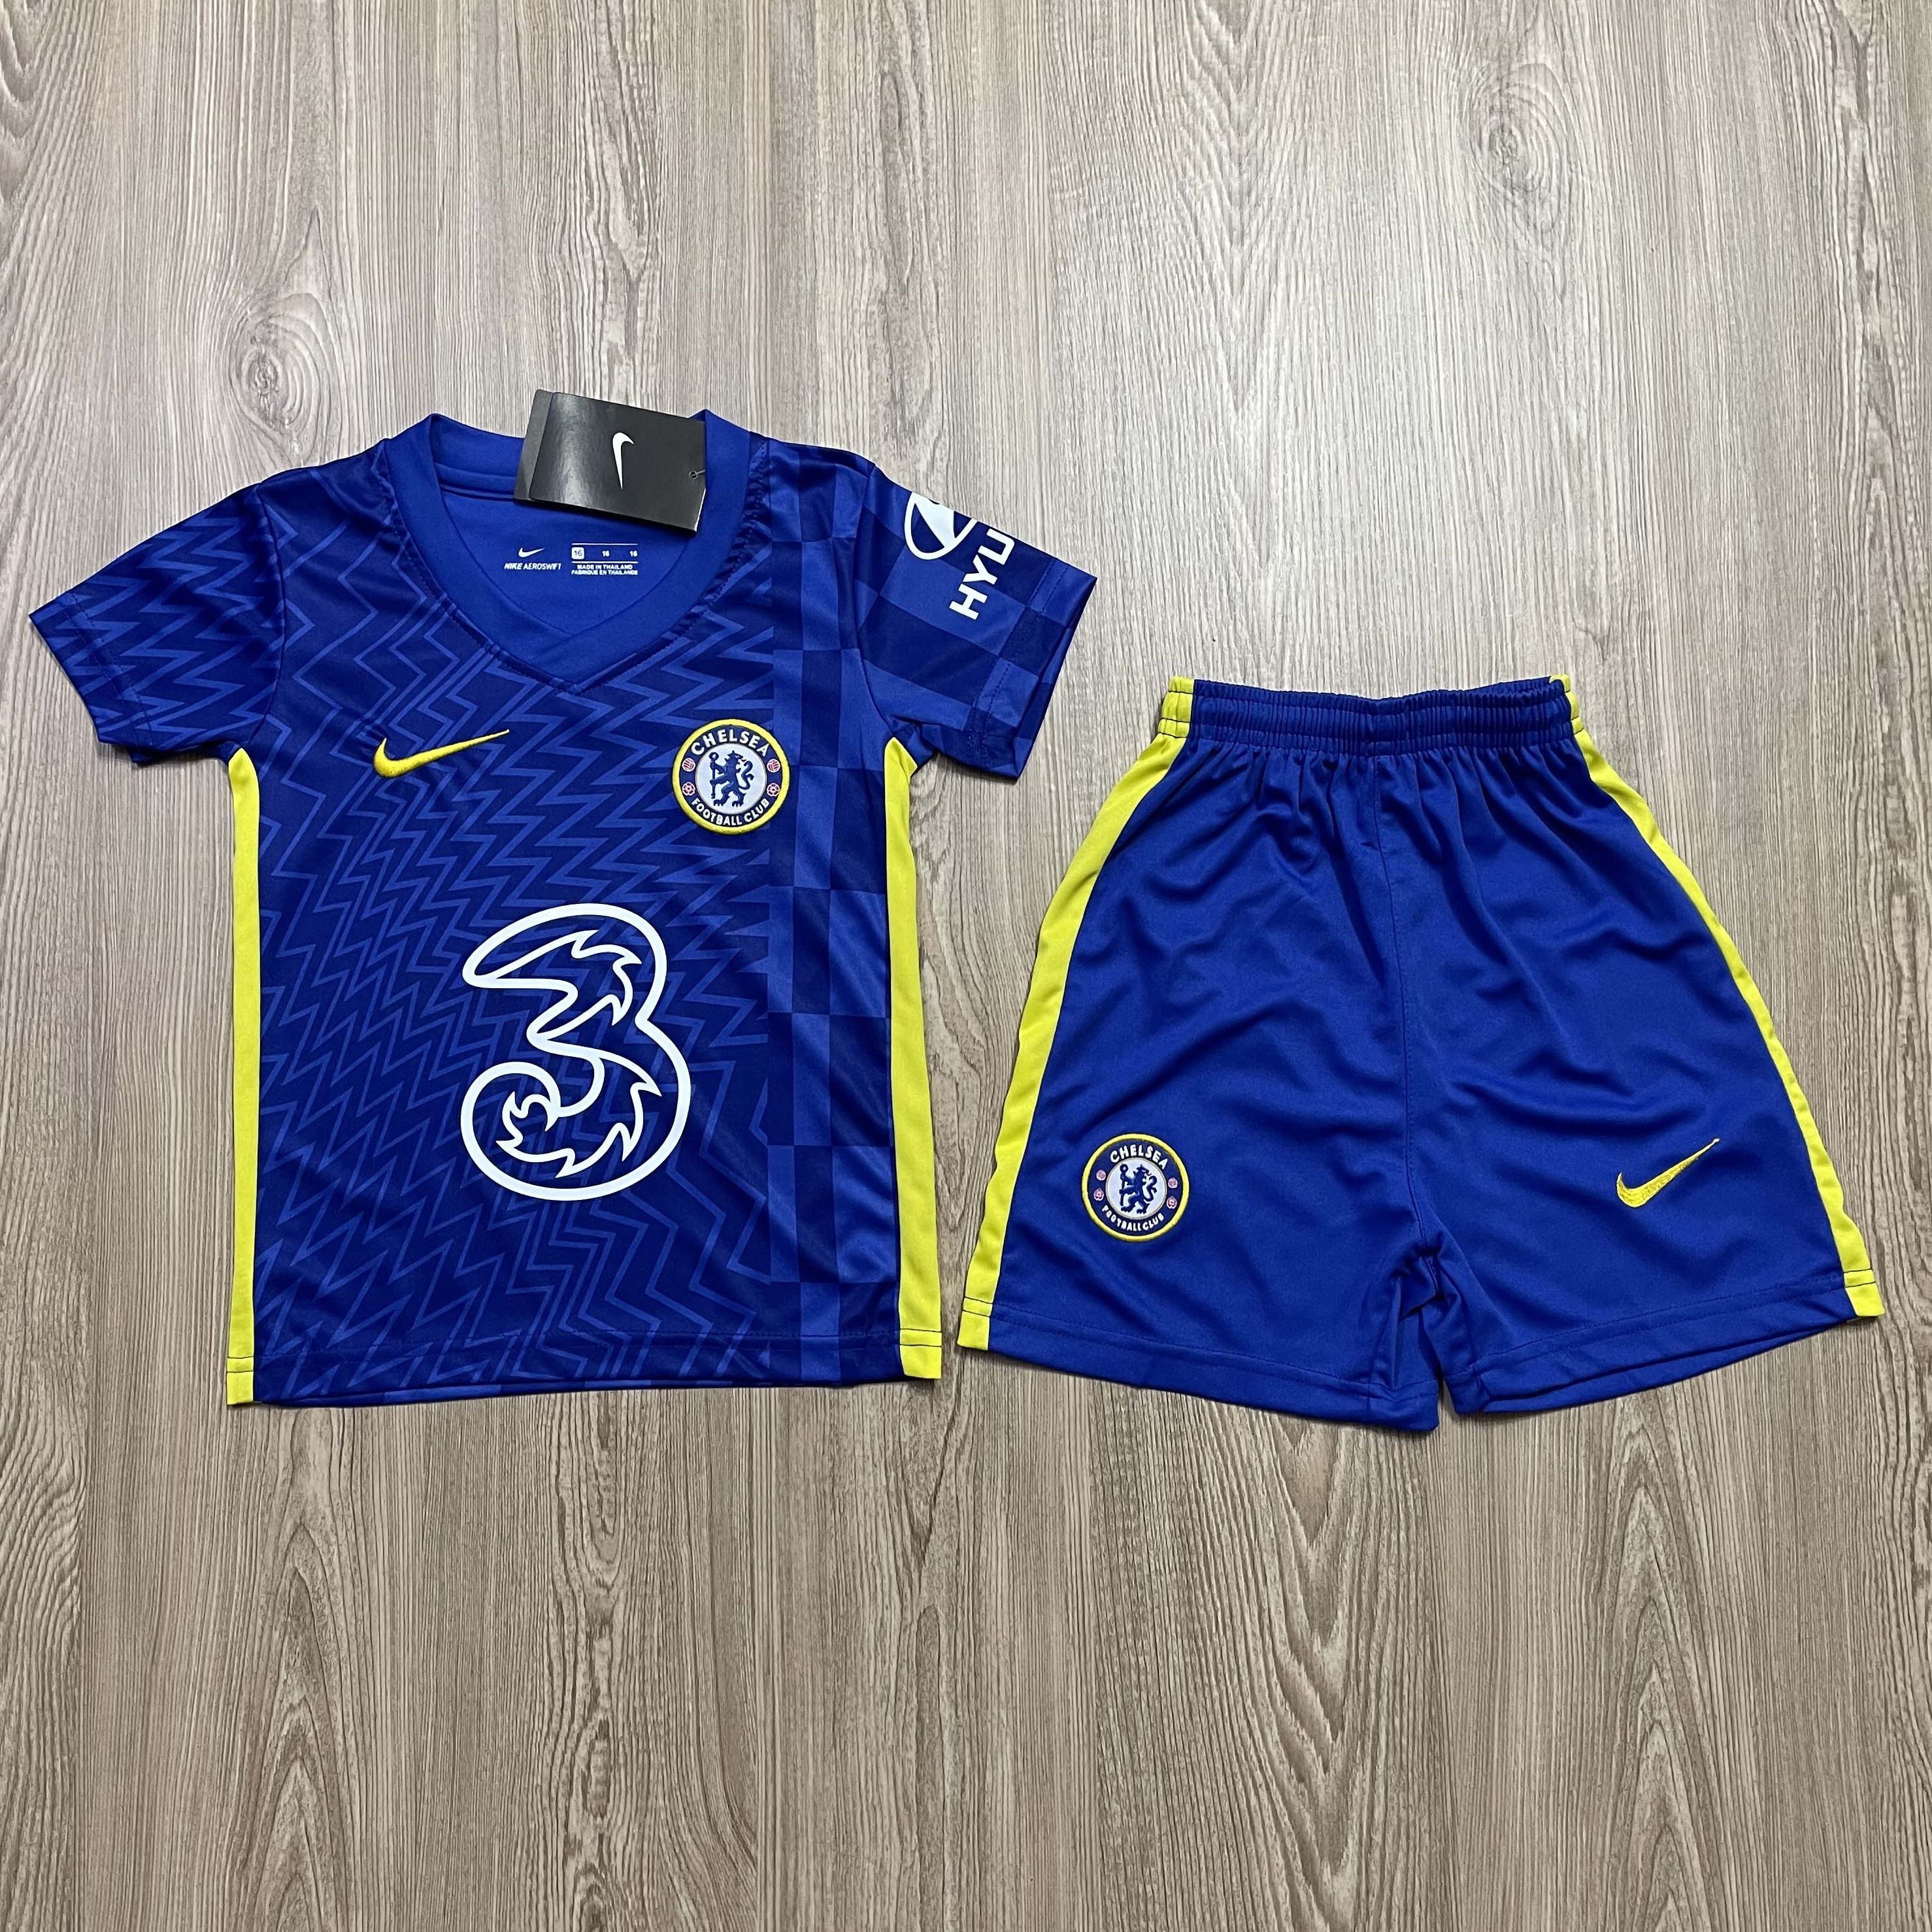 ชุดบอลเด็ก Chelsea ชุดกีฬาเด็กทีม เสื้อทีมเชลซี   ซื้อครั้งเดียวได้ทั้งชุด (เสื้อ+กางเกง) ตัวเดียวในราคาส่ง สินค้าเกรด-A